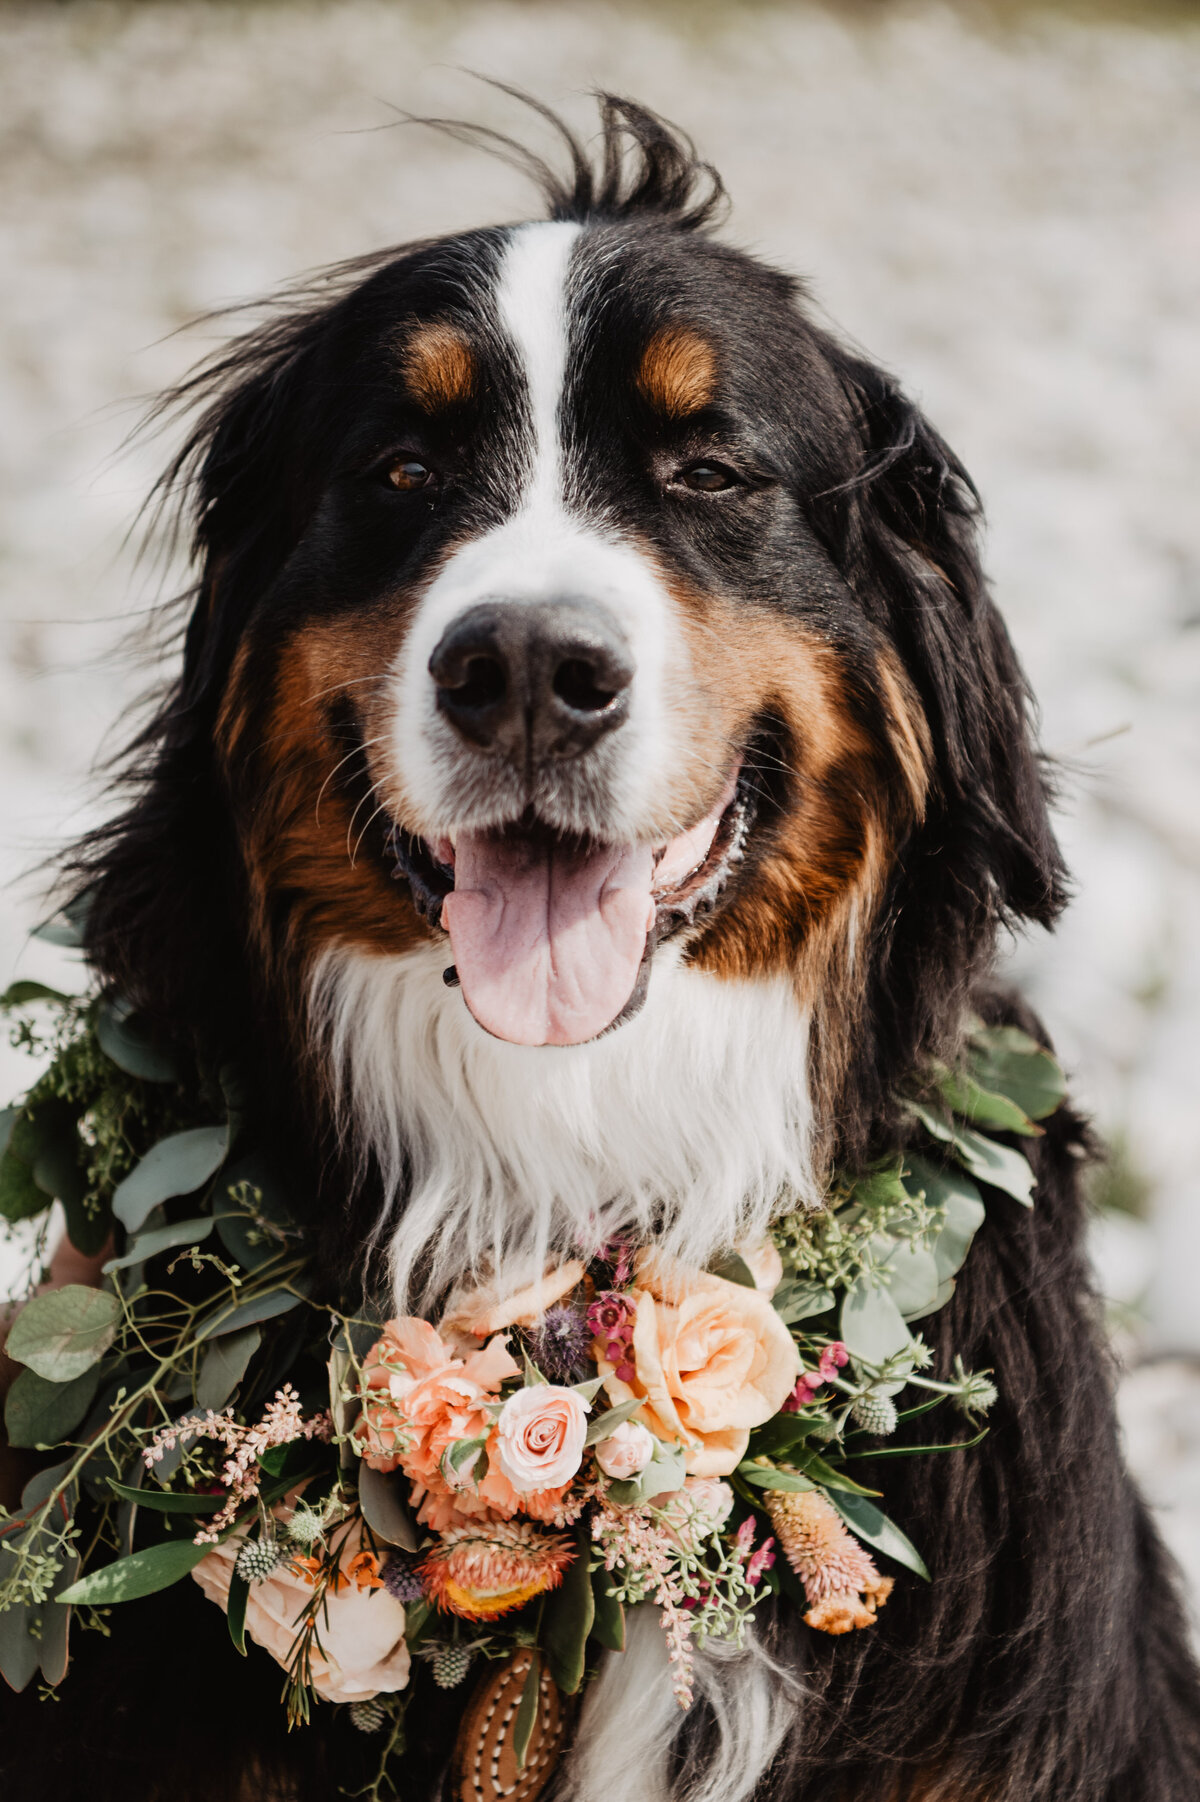 Jackson Hole Photographers capture dog wearing flower collar